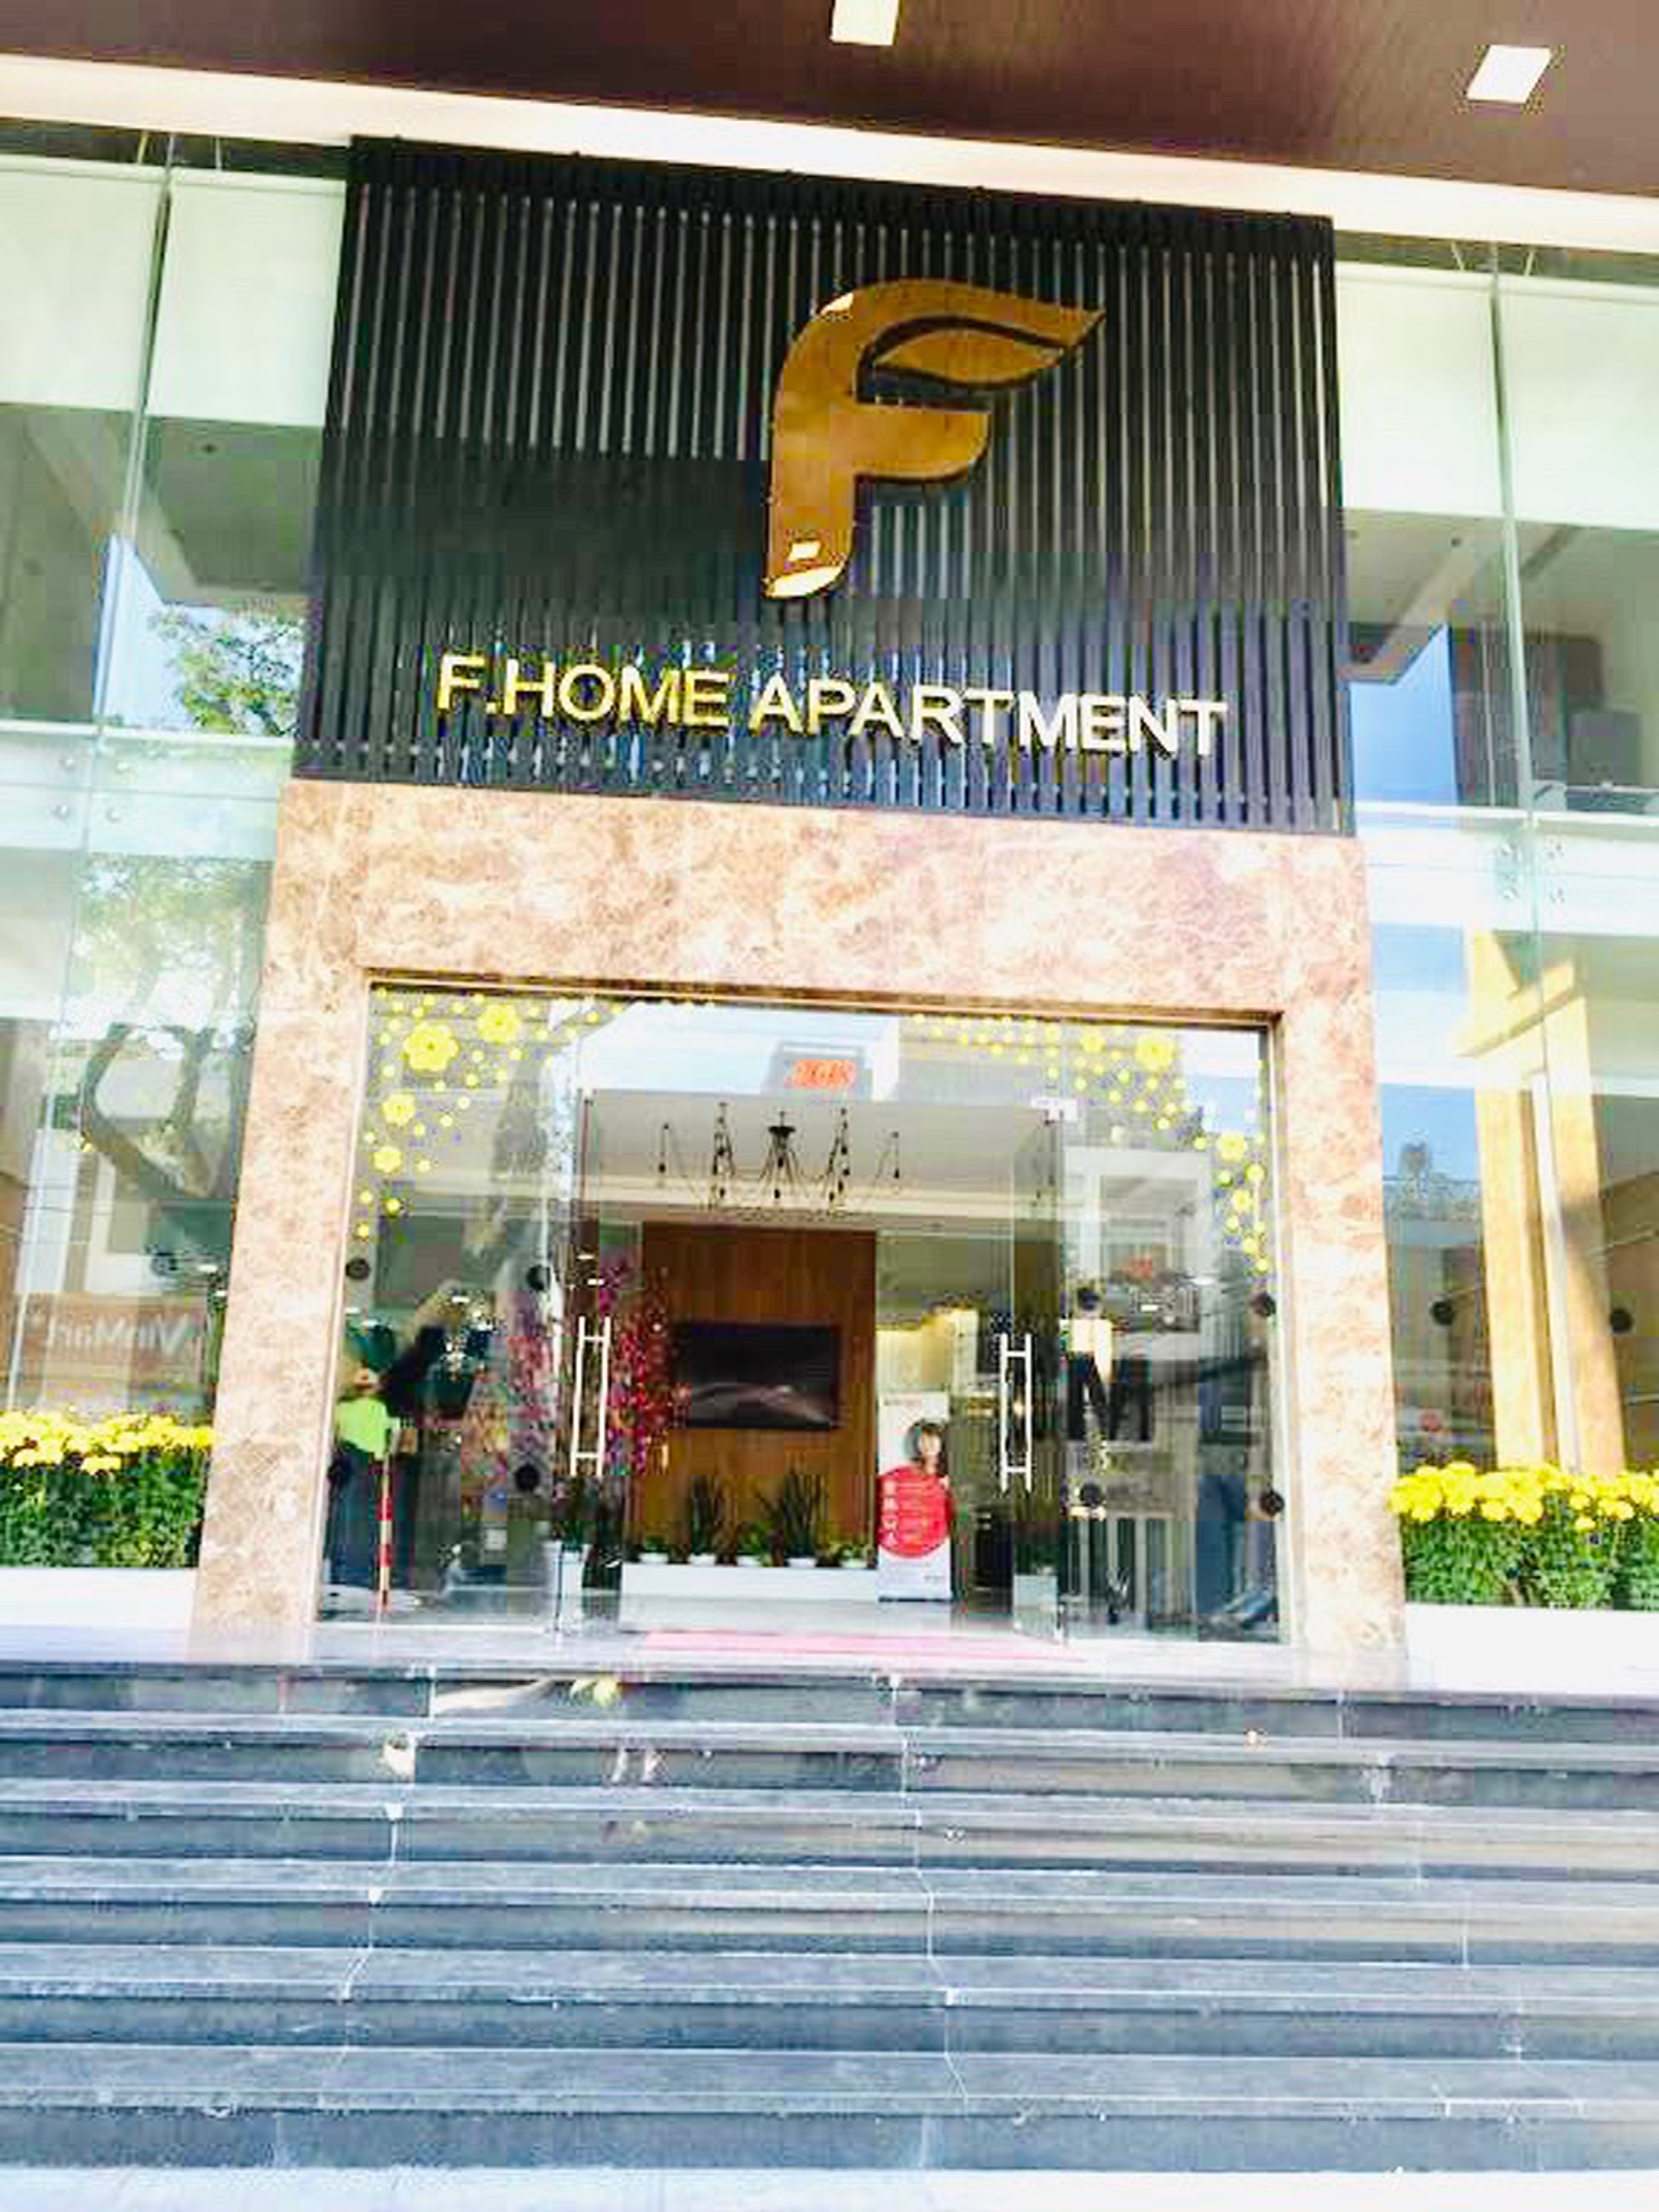 Cần bán gấp căn hộ Fhome 2PN cao cấp giá 2,55 tỷ, sổ hồng vĩnh viễn Budongsan Biển Xanh 7